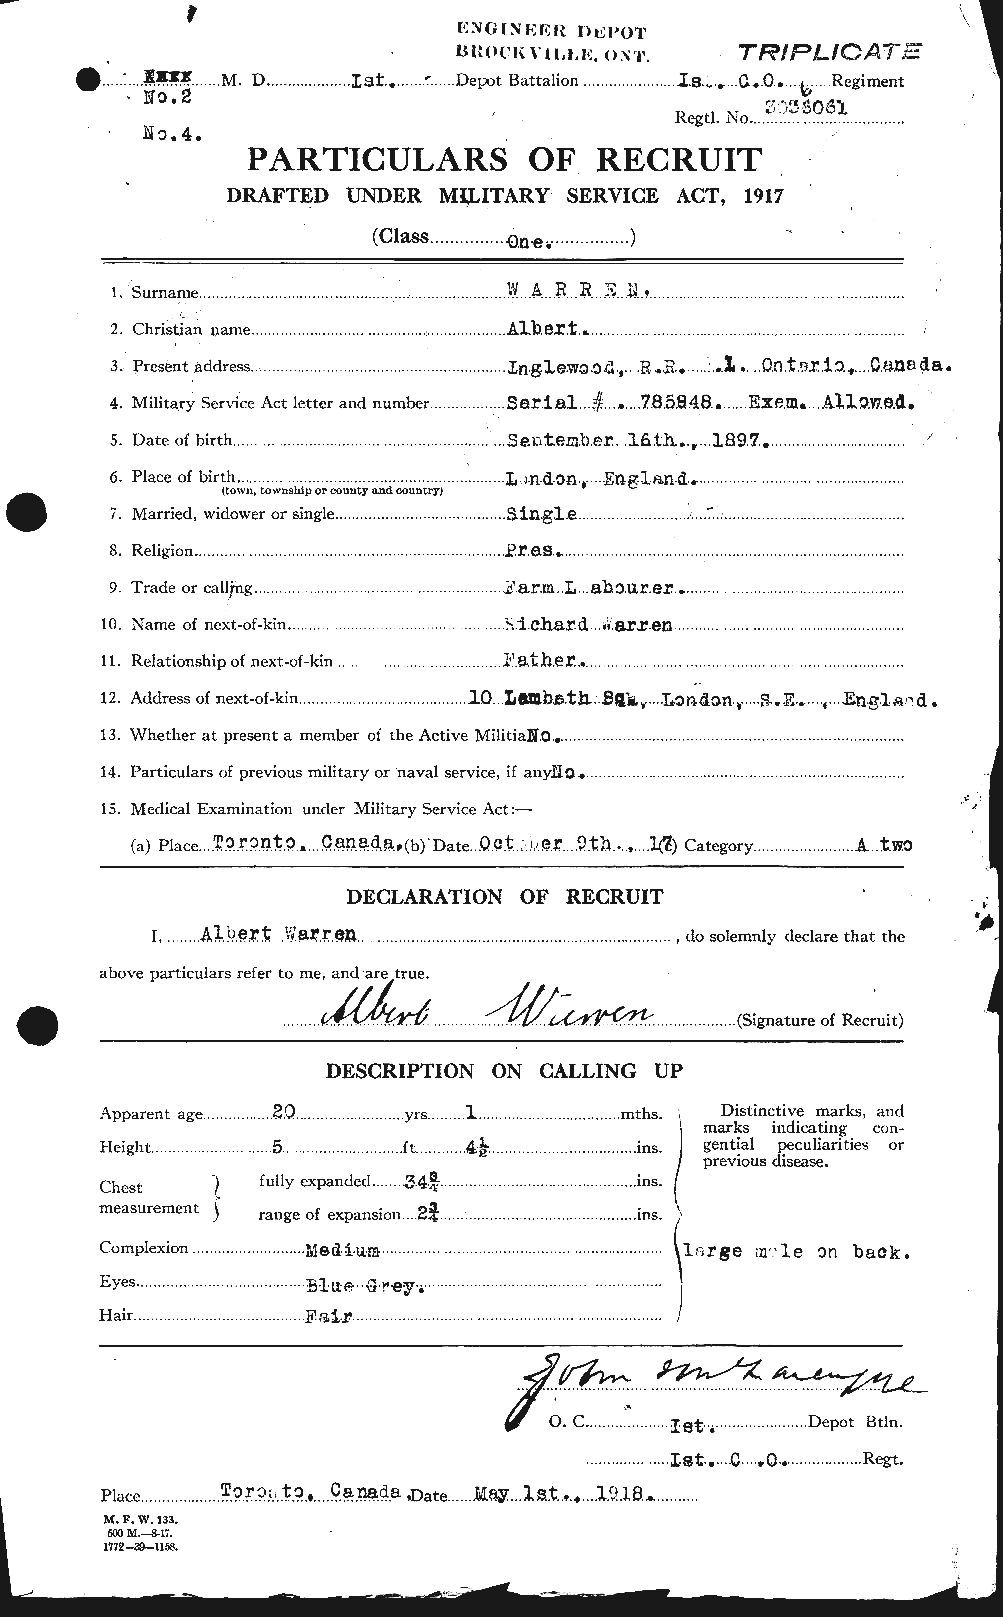 Dossiers du Personnel de la Première Guerre mondiale - CEC 658334a